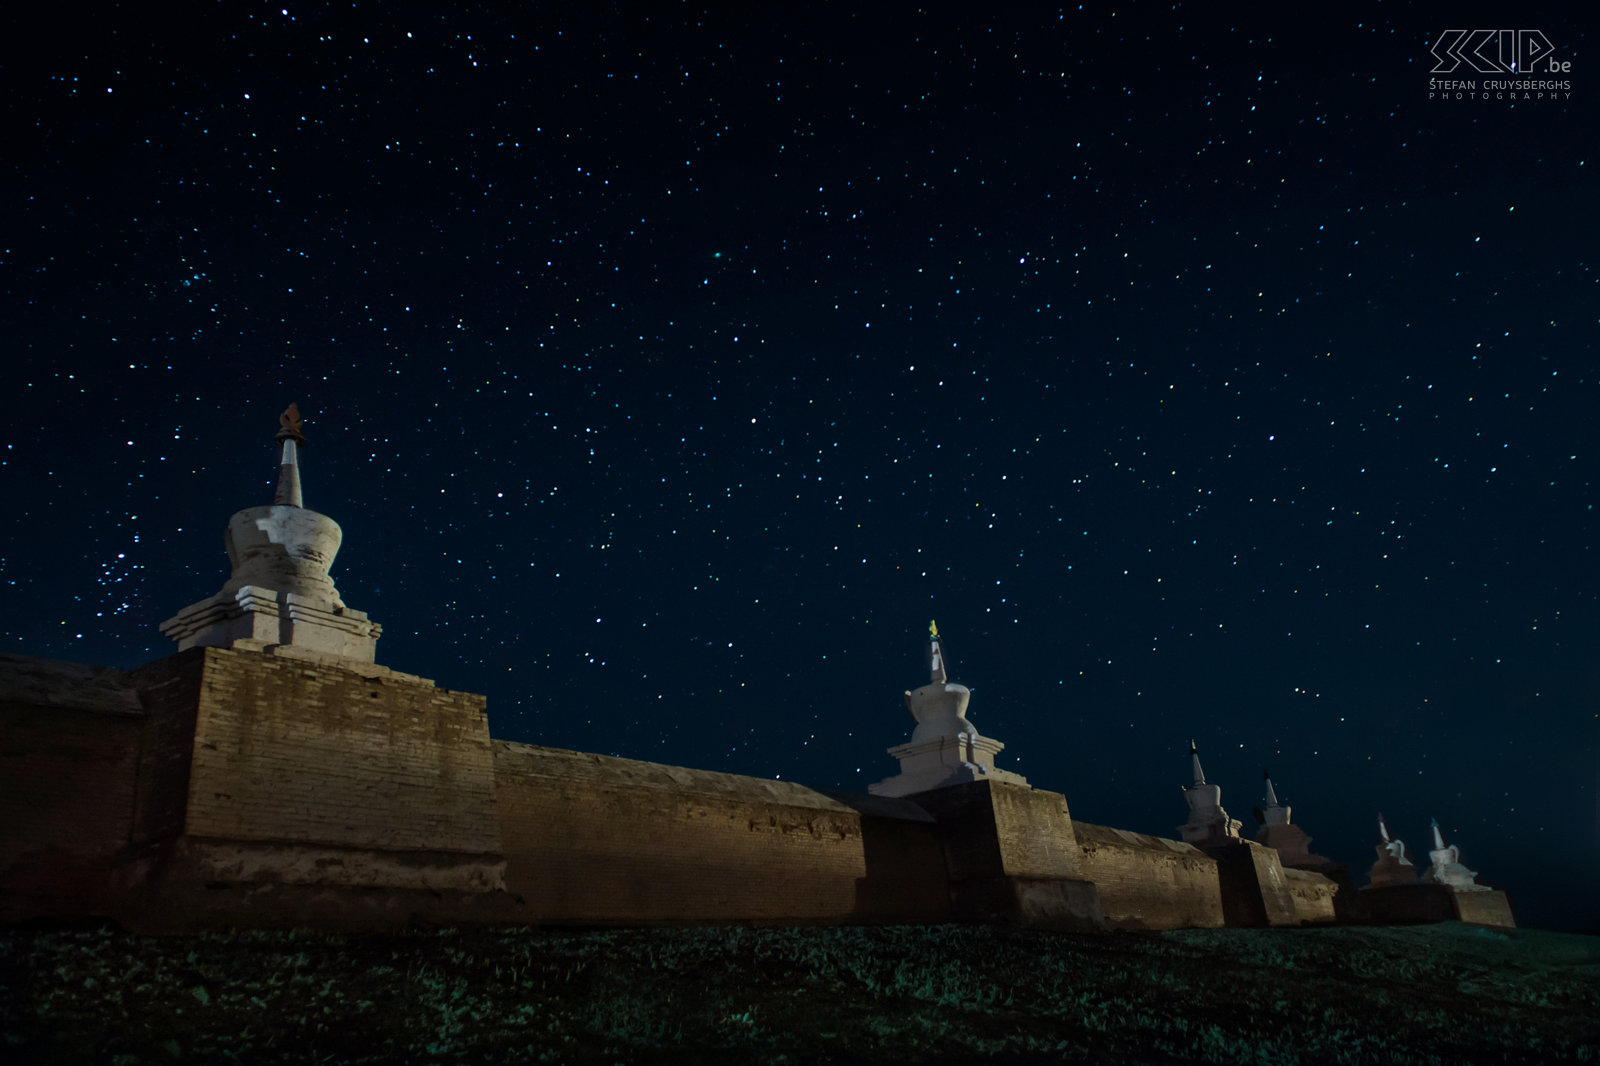 Kharkhorin - Erdene Zuu by night Nachtfoto van Erdene Zuu in Kharkhorin/Karakorum in centraal Mongolië. Samen met m’n vriendin ben ik ’s avonds teruggekeerd naar de grote buitenmuren met stoepa’s van dit oude Boedhistische klooster. We probeerden beiden met onze zaklamp de stoepa’s te verlichten en dit samen met de prachtige sterrenhemel op foto te krijgen.  Stefan Cruysberghs